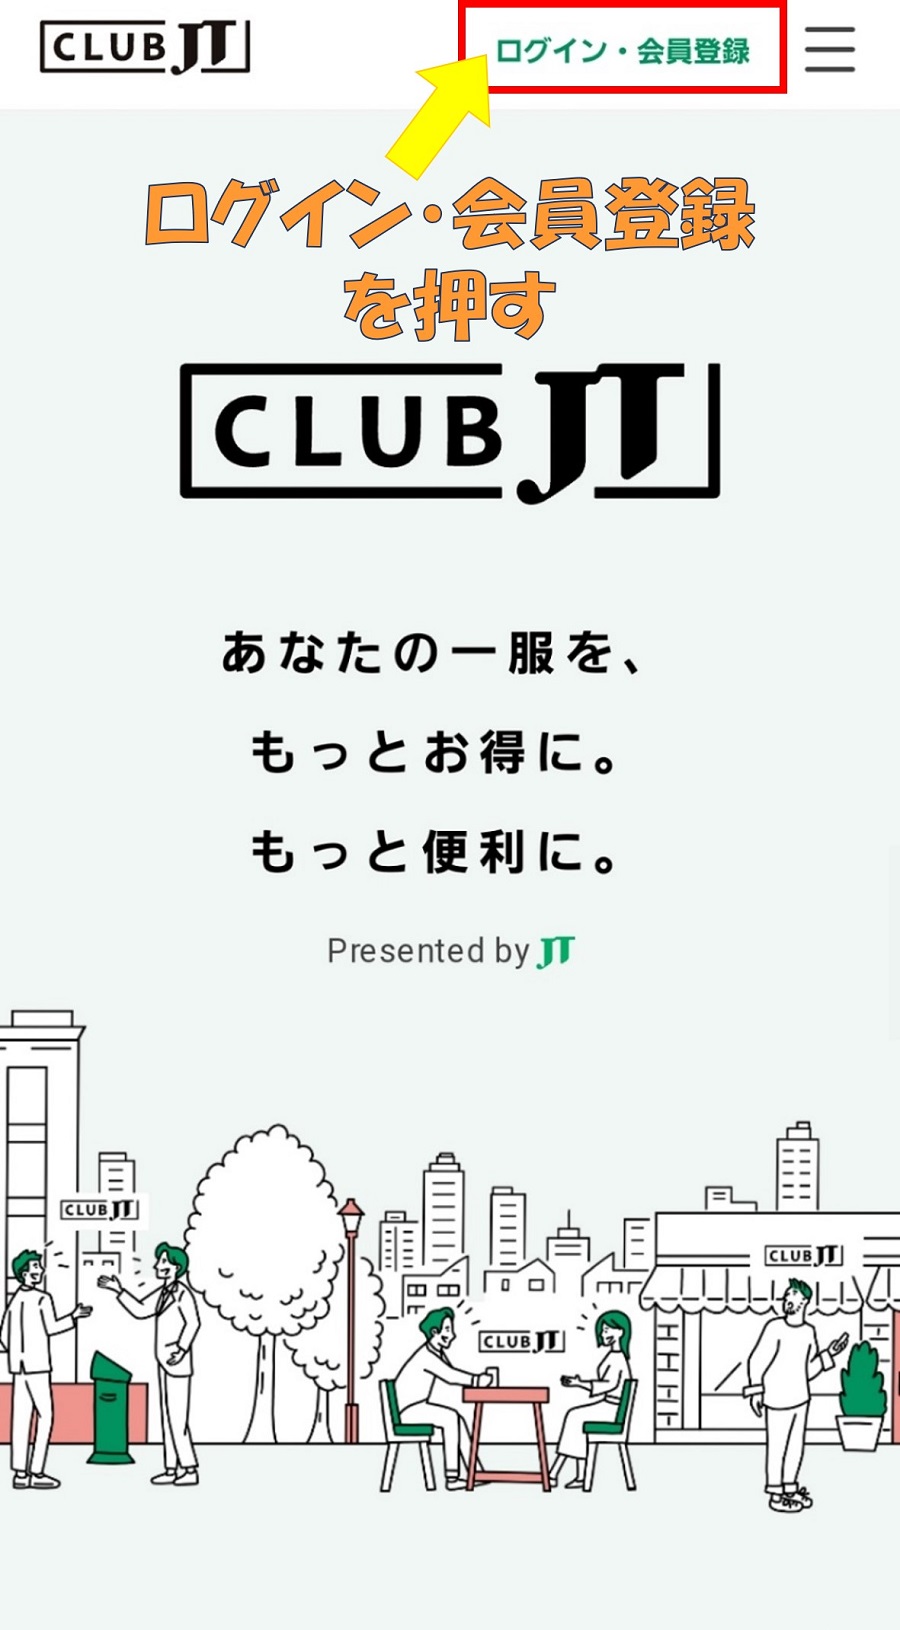 CLUB JTに会員登録2